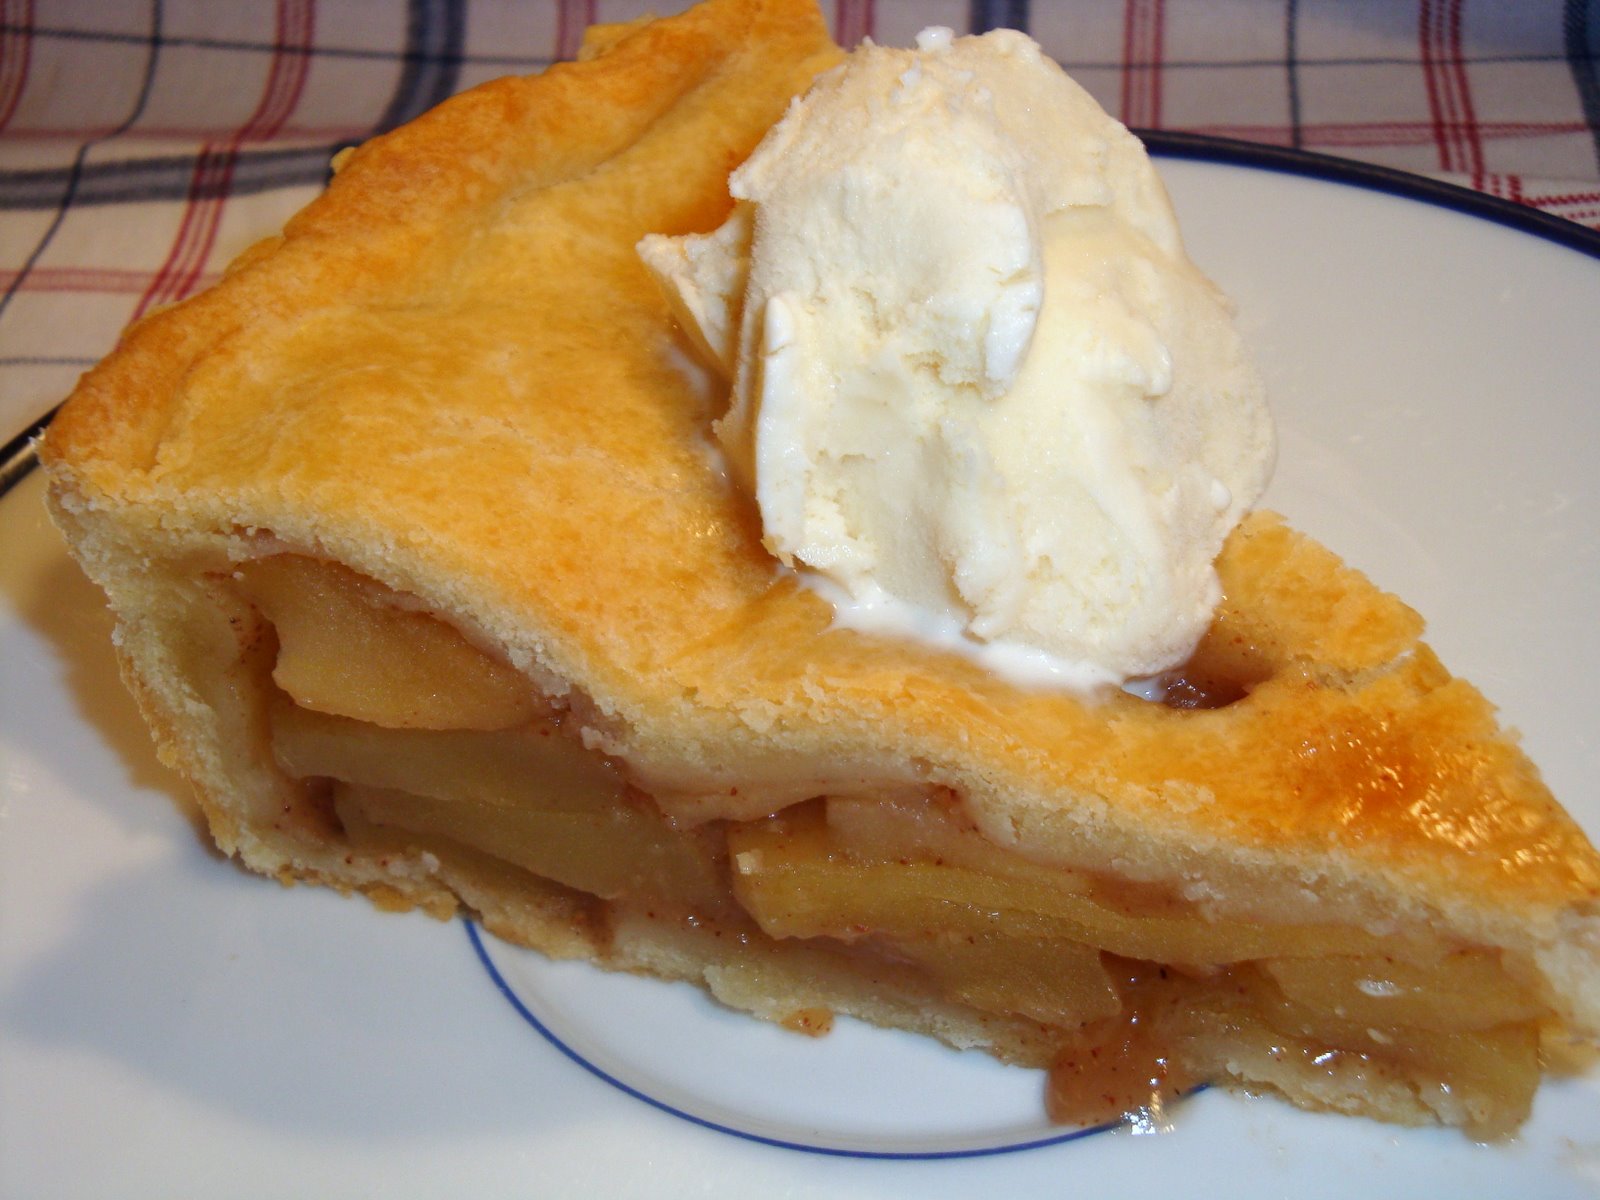 A delicious apple pie